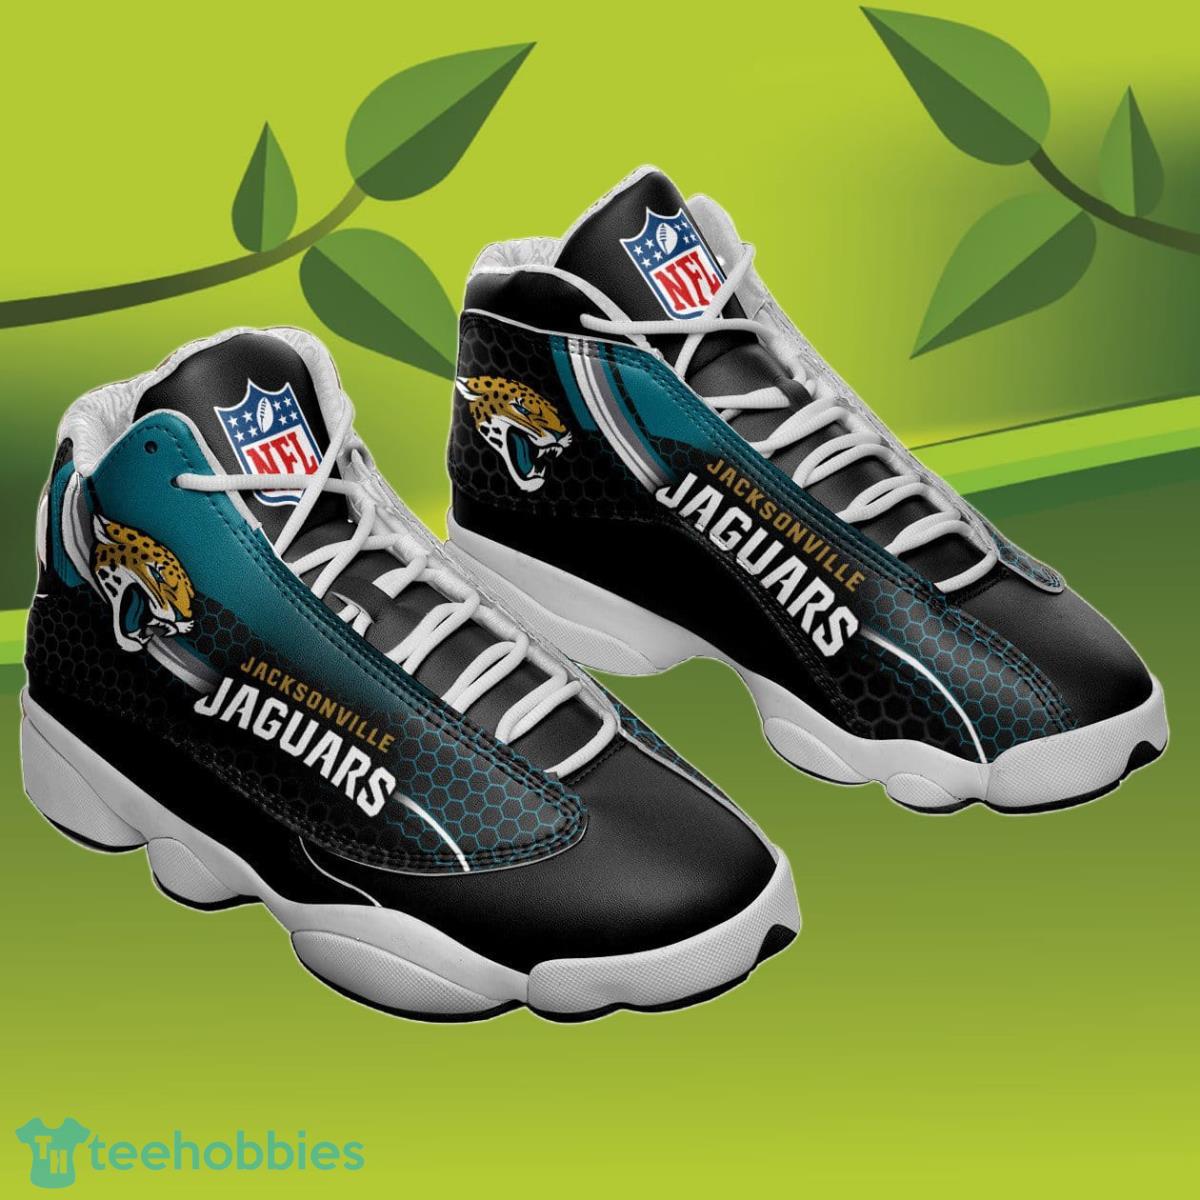 Jacksonville Jaguars Air Jordan 13 Sneakers Best Gift For Men And Women Product Photo 1